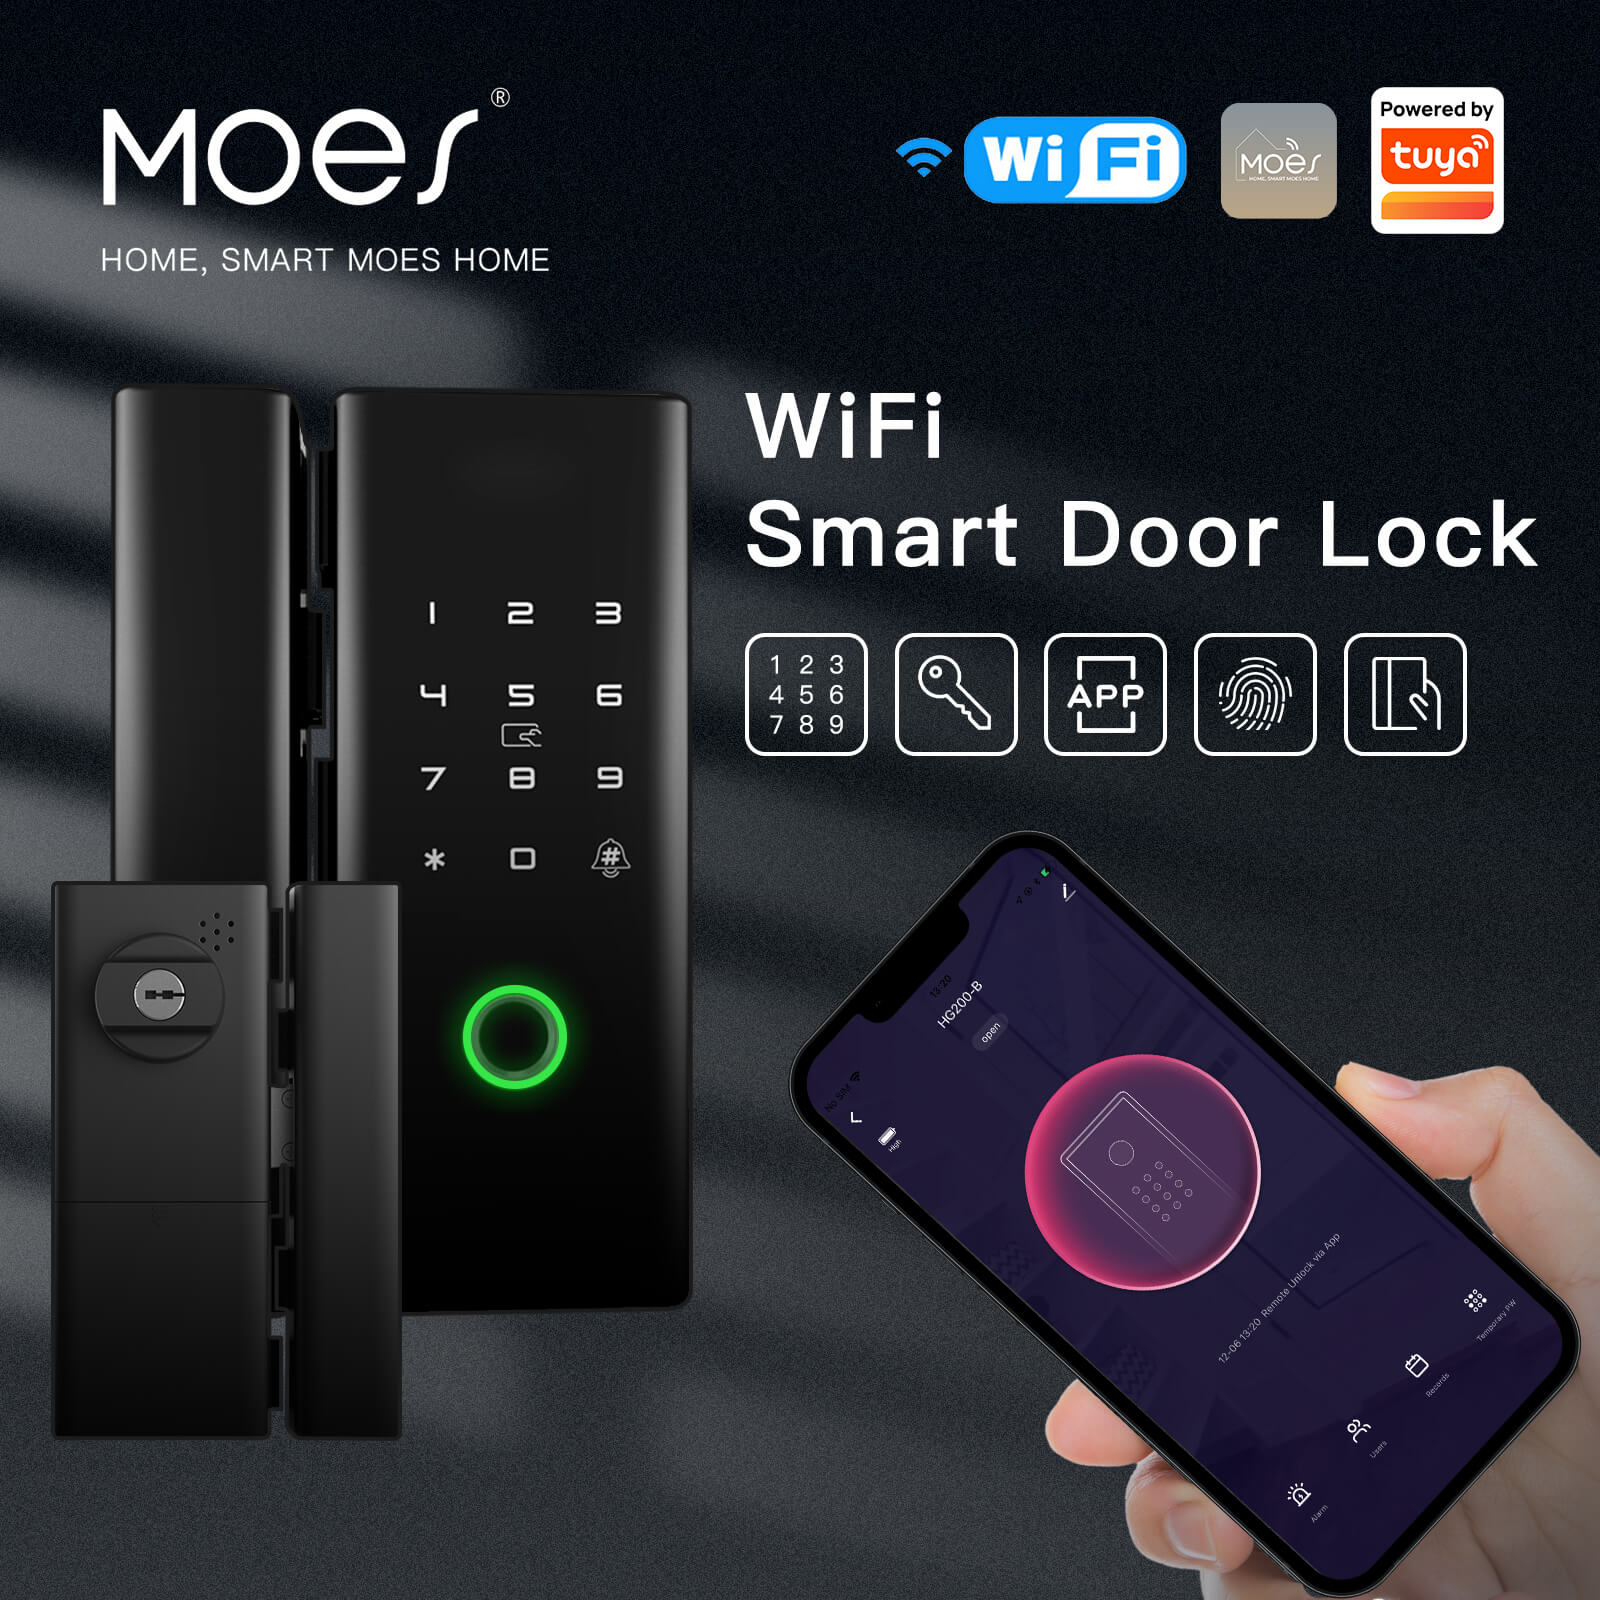 MOES WiFi Smart App Remote Control Door Lock Iron Gate Outdoor Mechanical Key Fingerprint Password Electronic Unlock - MOES